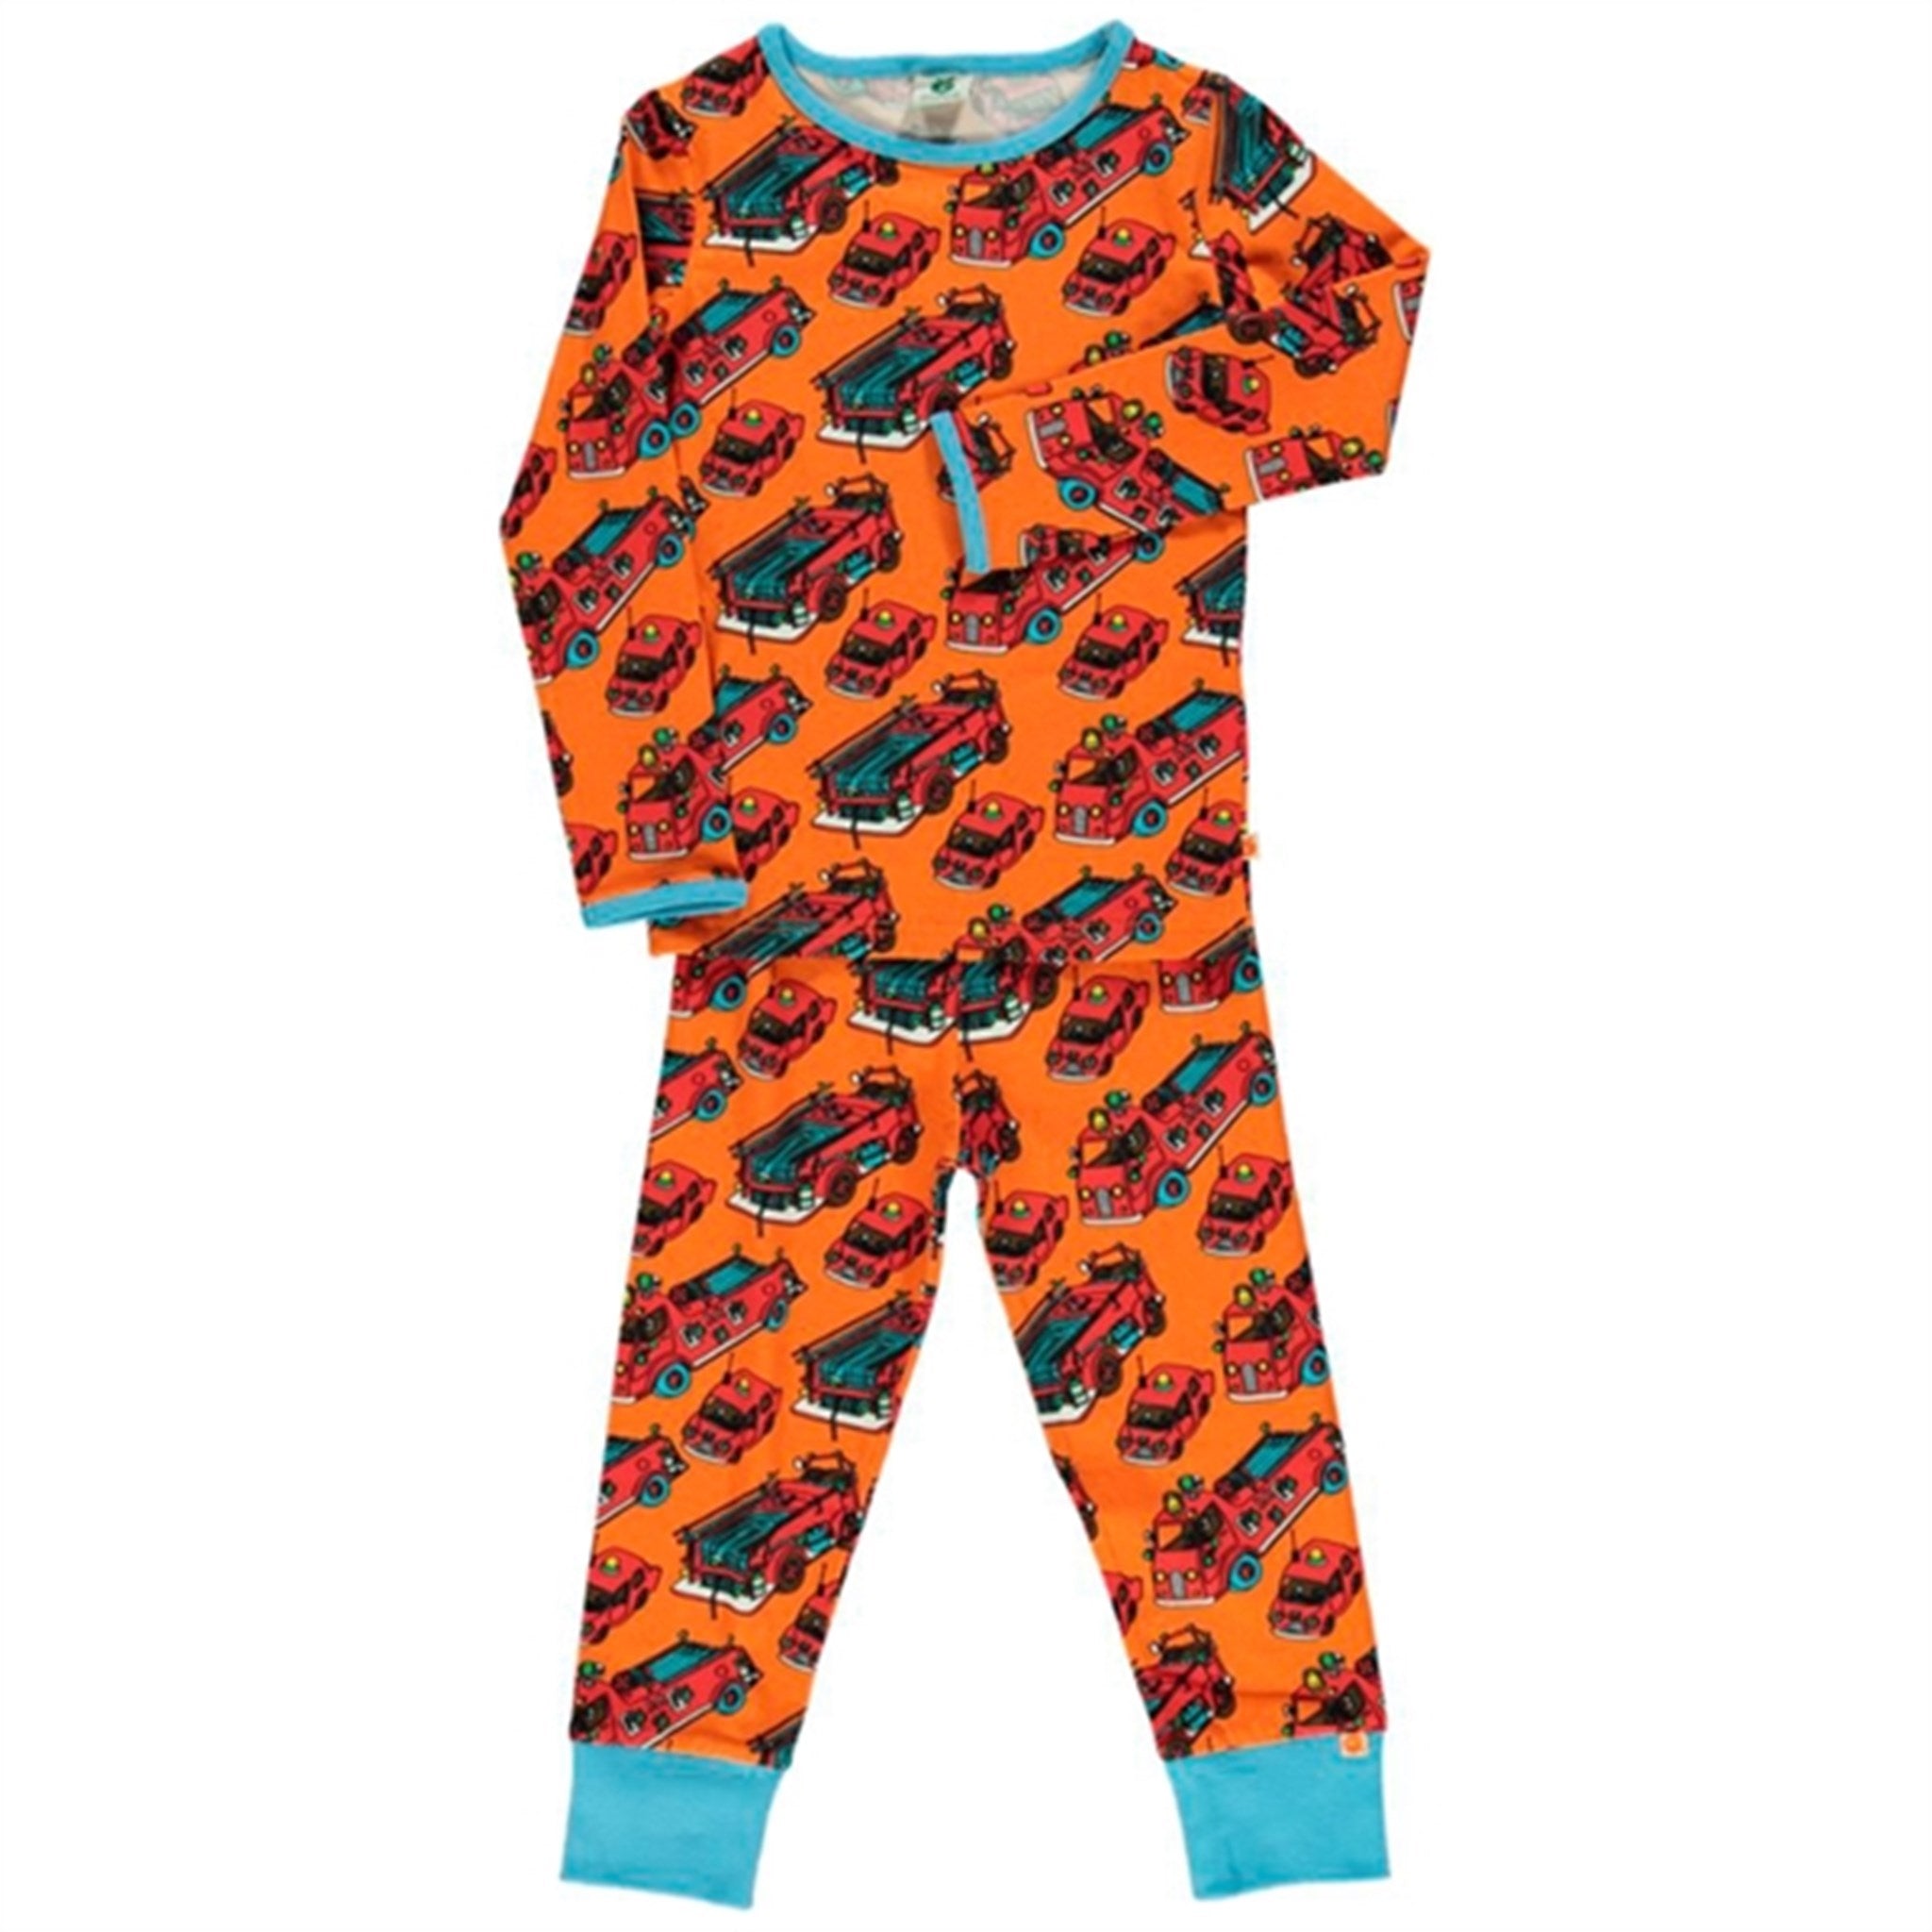 Småfolk Orange Firetruck Pyjamas